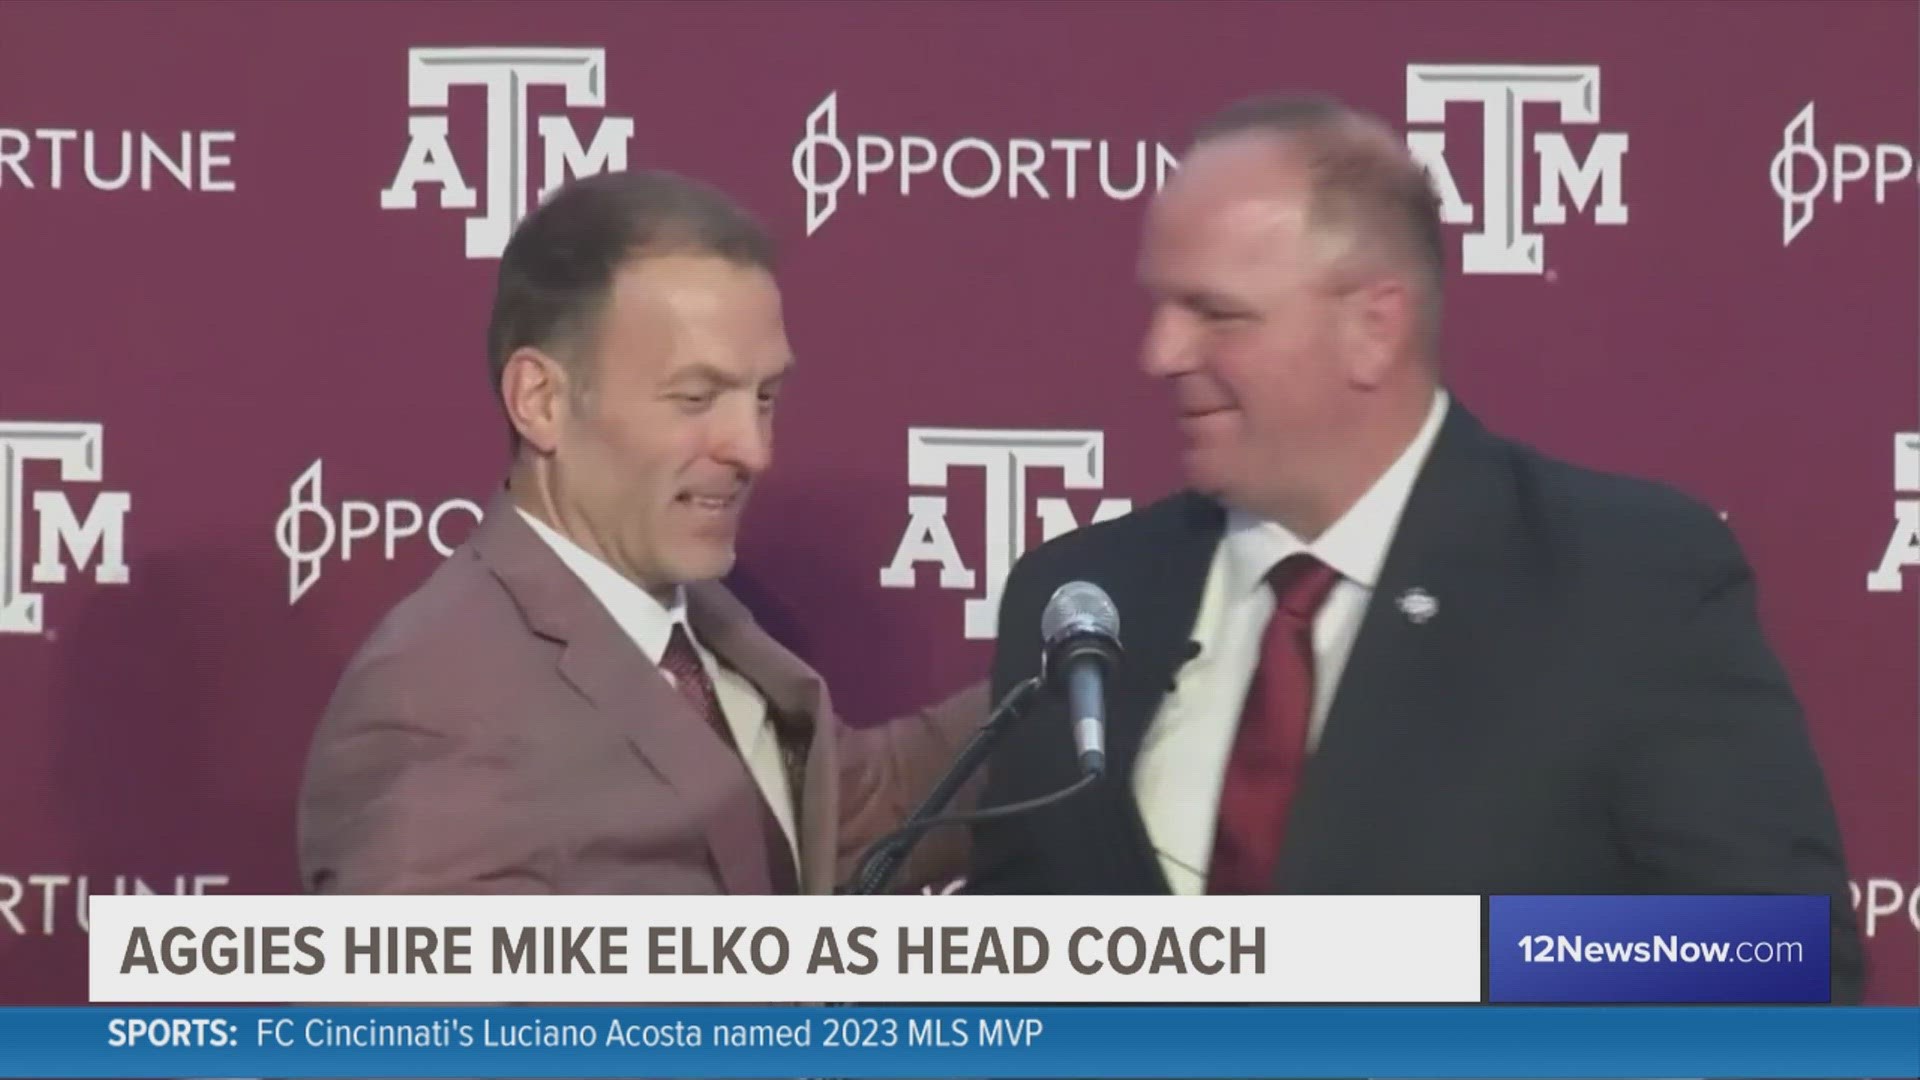 Texas A&M names Mike Elko as new head football coach